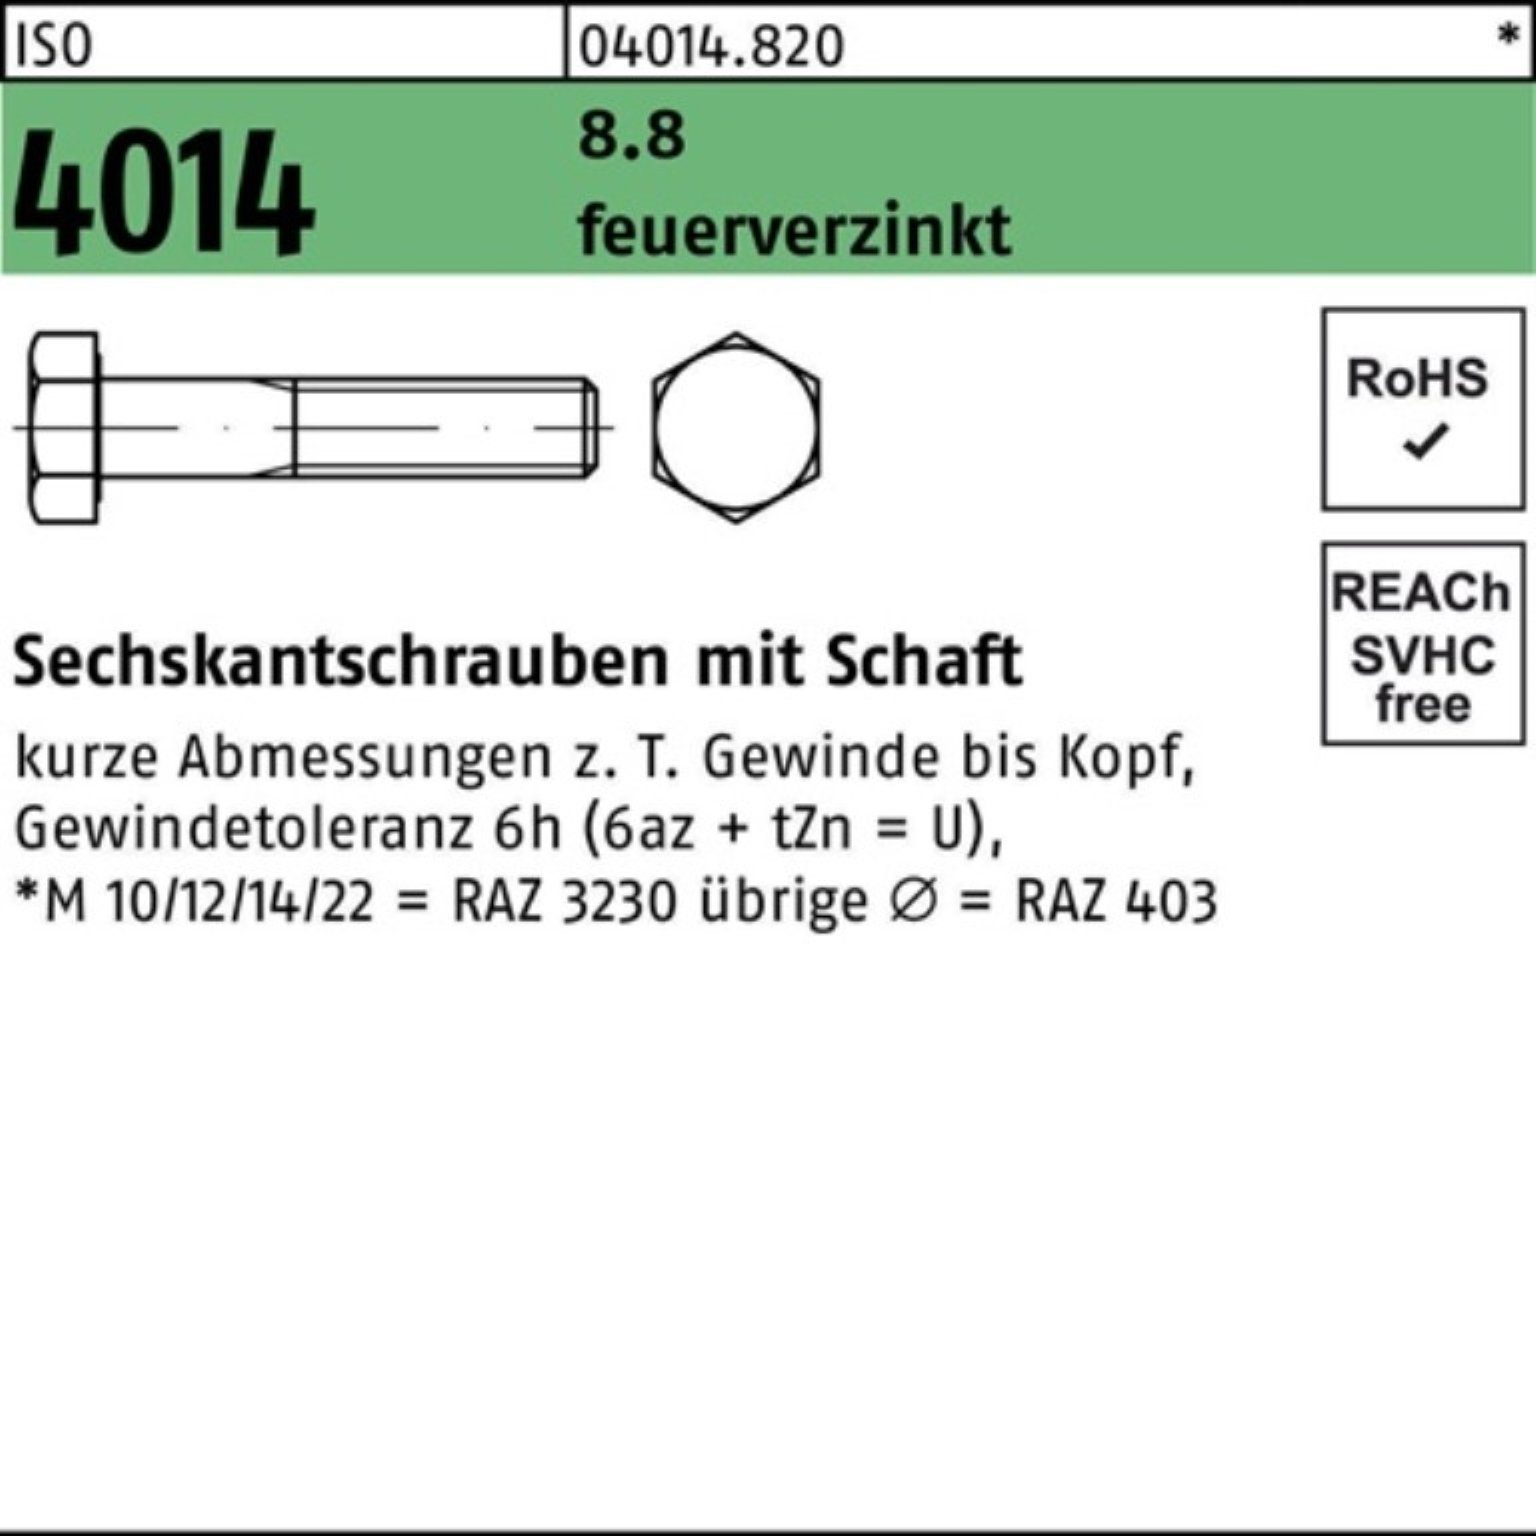 Bufab Sechskantschraube 100er Pack Sechskantschraube ISO 4014 Schaft M20x 70 8.8 feuerverz. 25